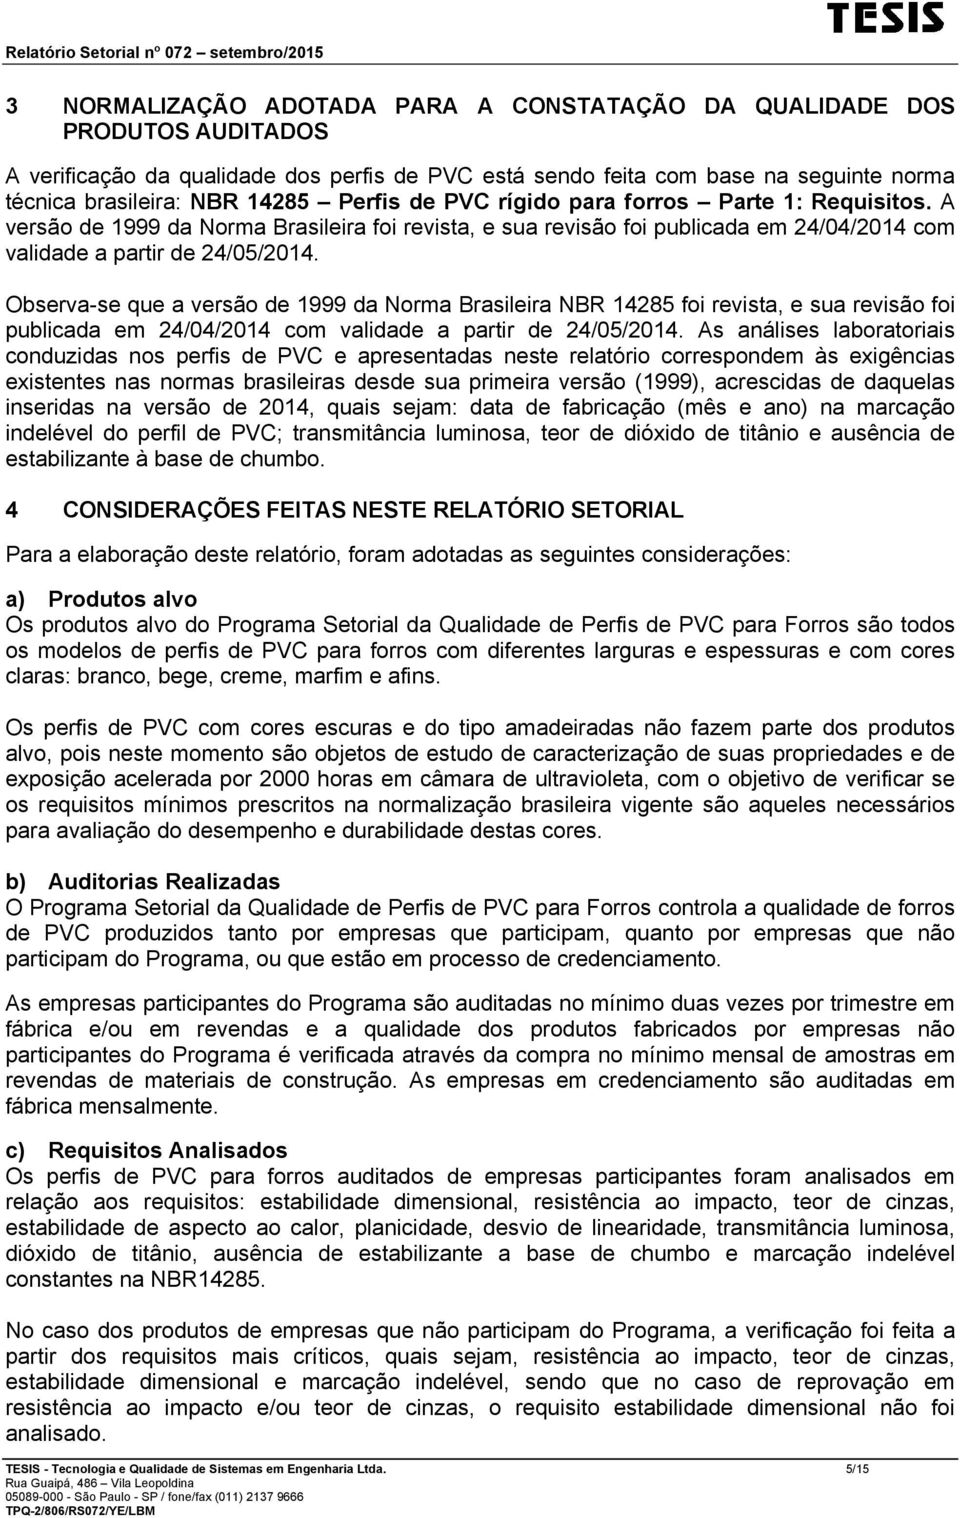 Observa-se que a versão de 1999 da Norma Brasileira NBR 14285 foi revista, e sua revisão foi publicada em 24/04/2014 com validade a partir de 24/05/2014.